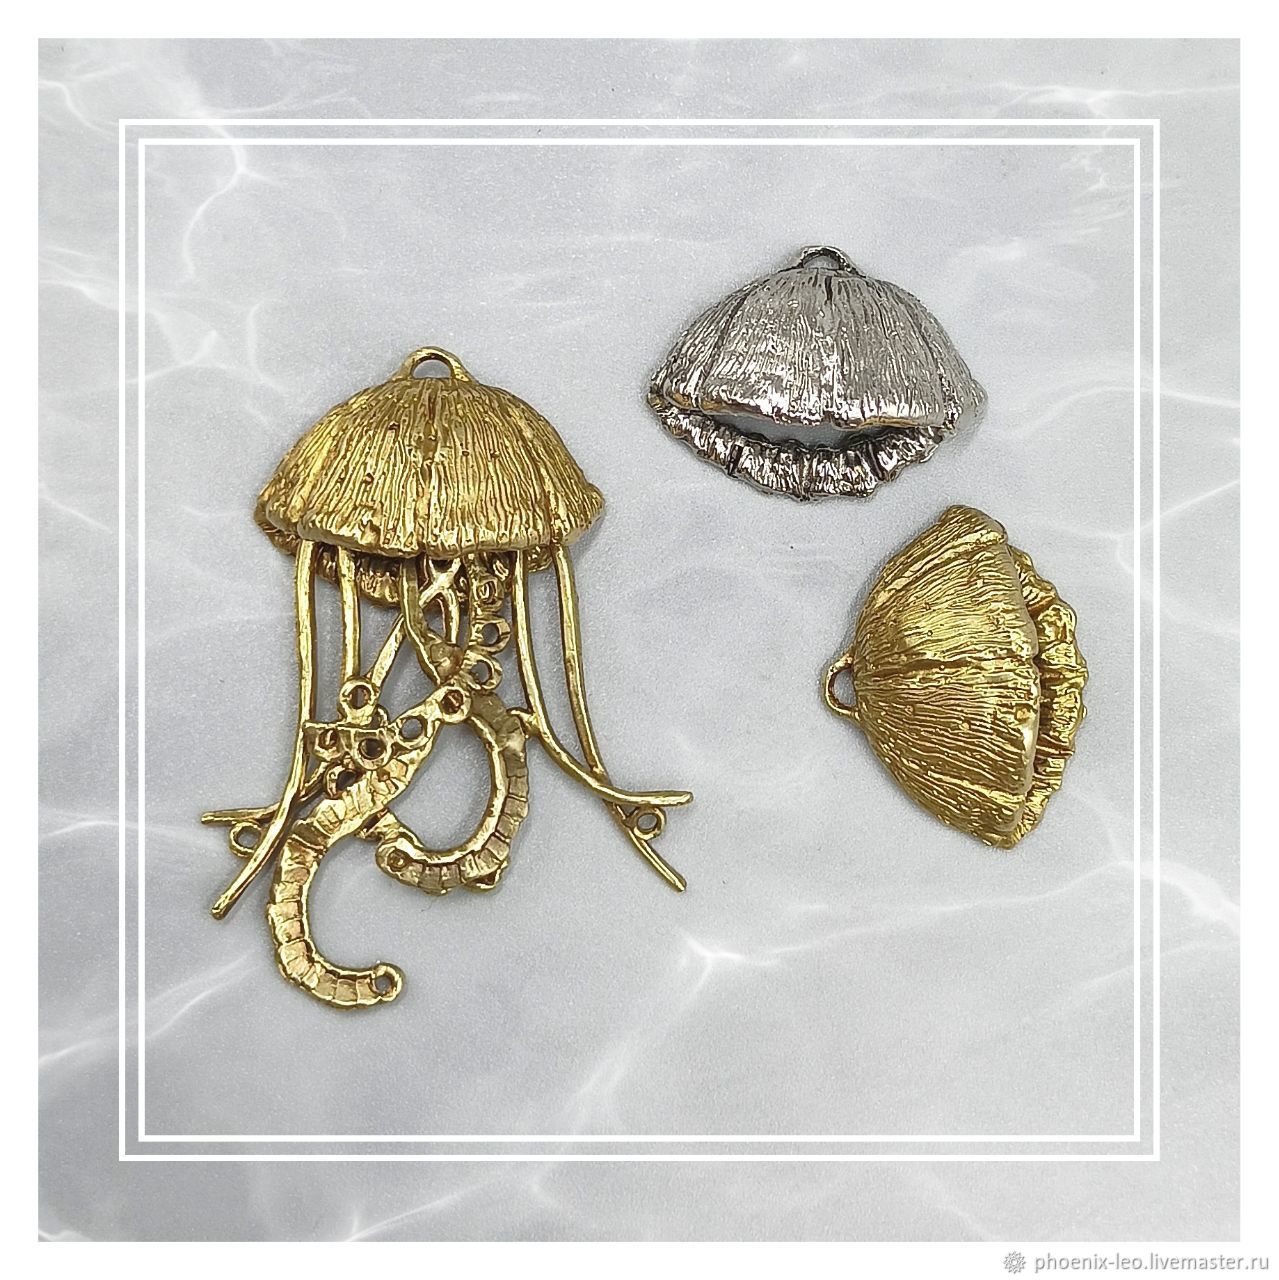 Лучшая снасть для зимней ловли – мормышка медуза. Как сделать своими руками?